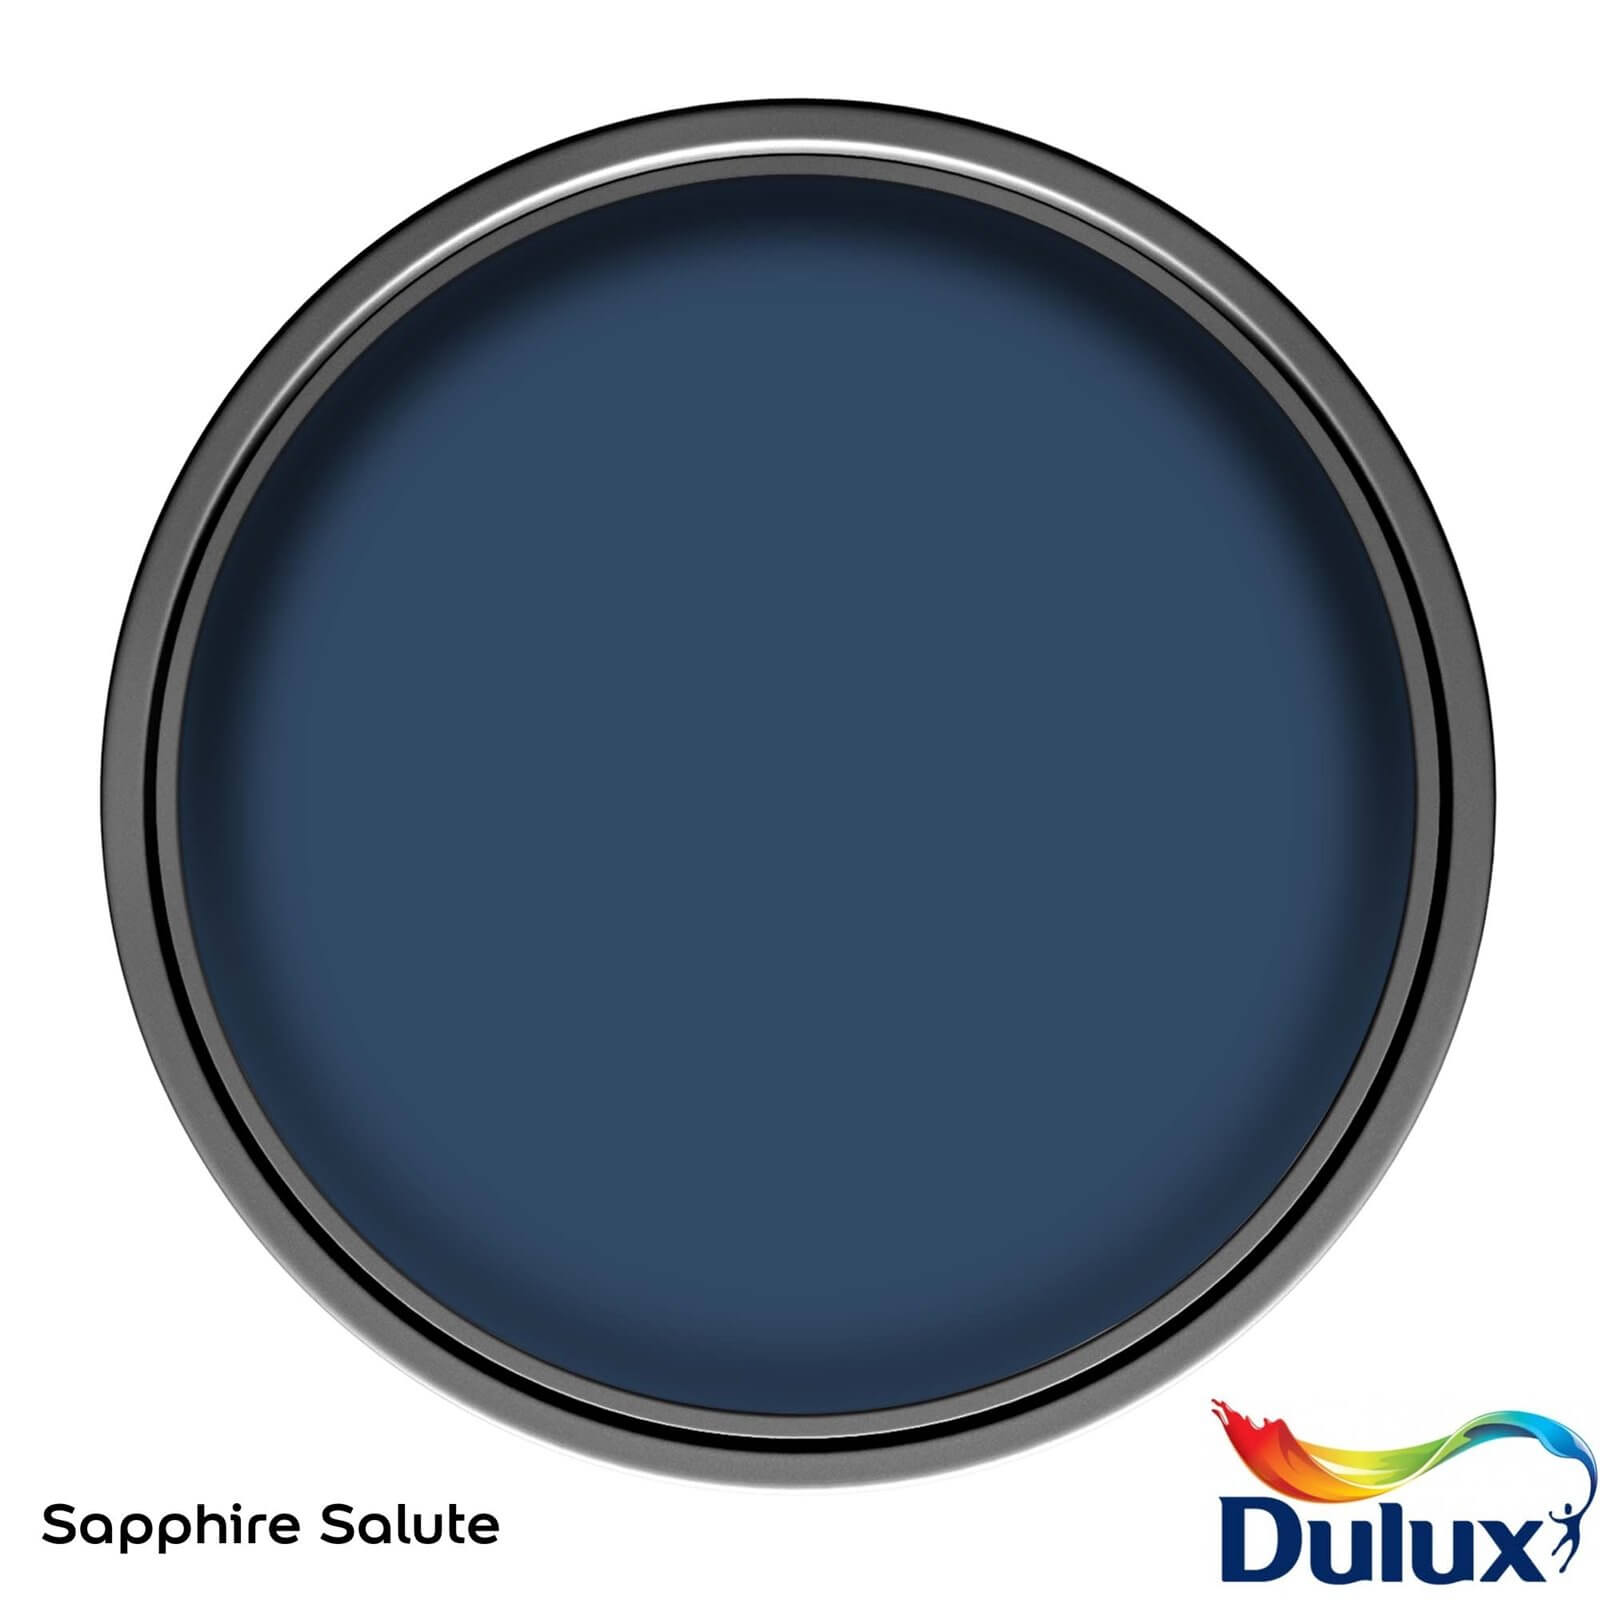 Dulux Matt Emulsion Paint Sapphire Salute - 2.5L